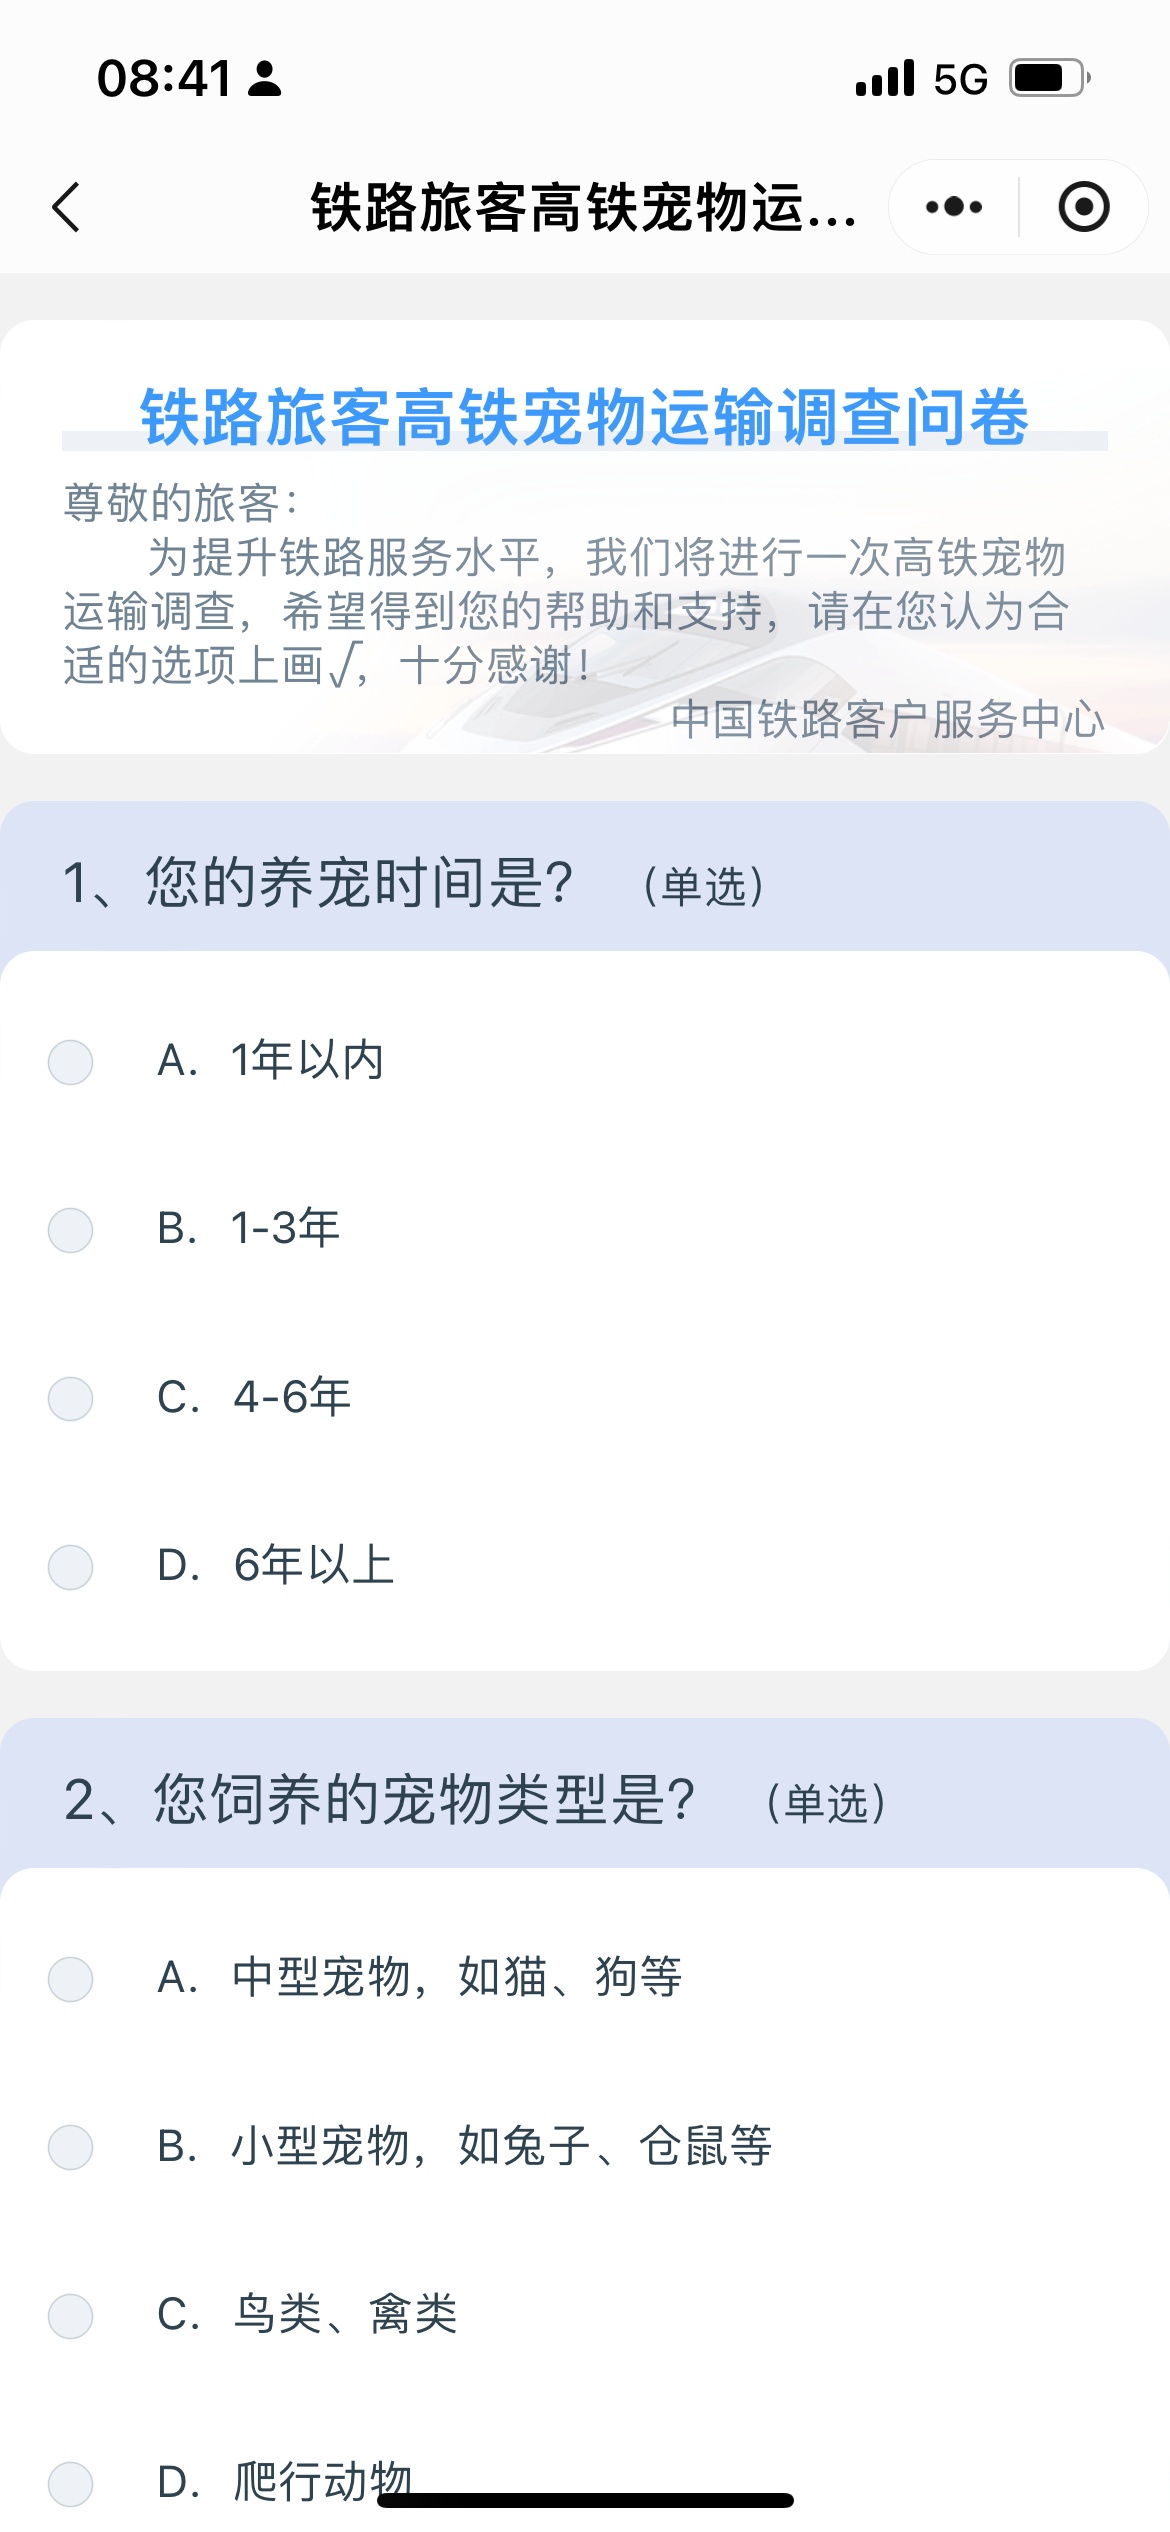 中国铁路客户服务中心推出高铁宠物运输调查问卷。 截屏图